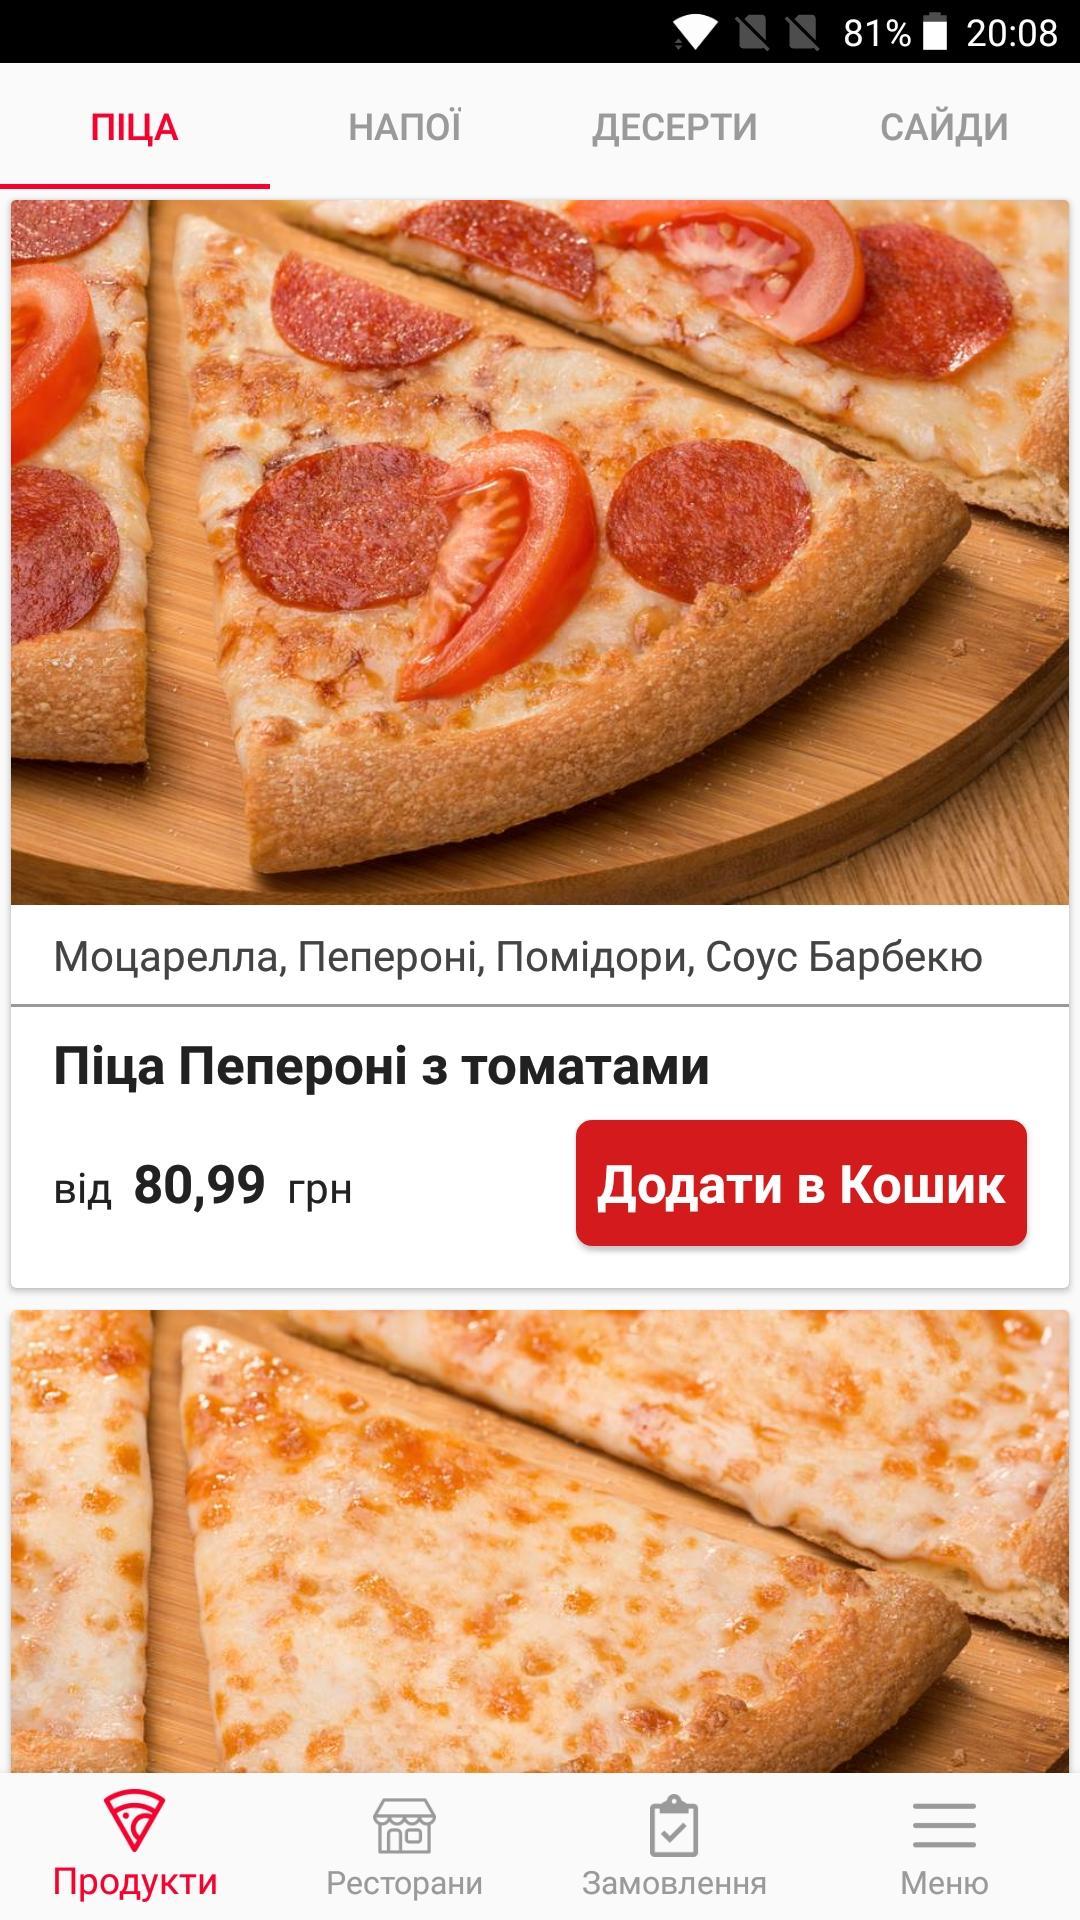 Domino's Pizza Ukraine